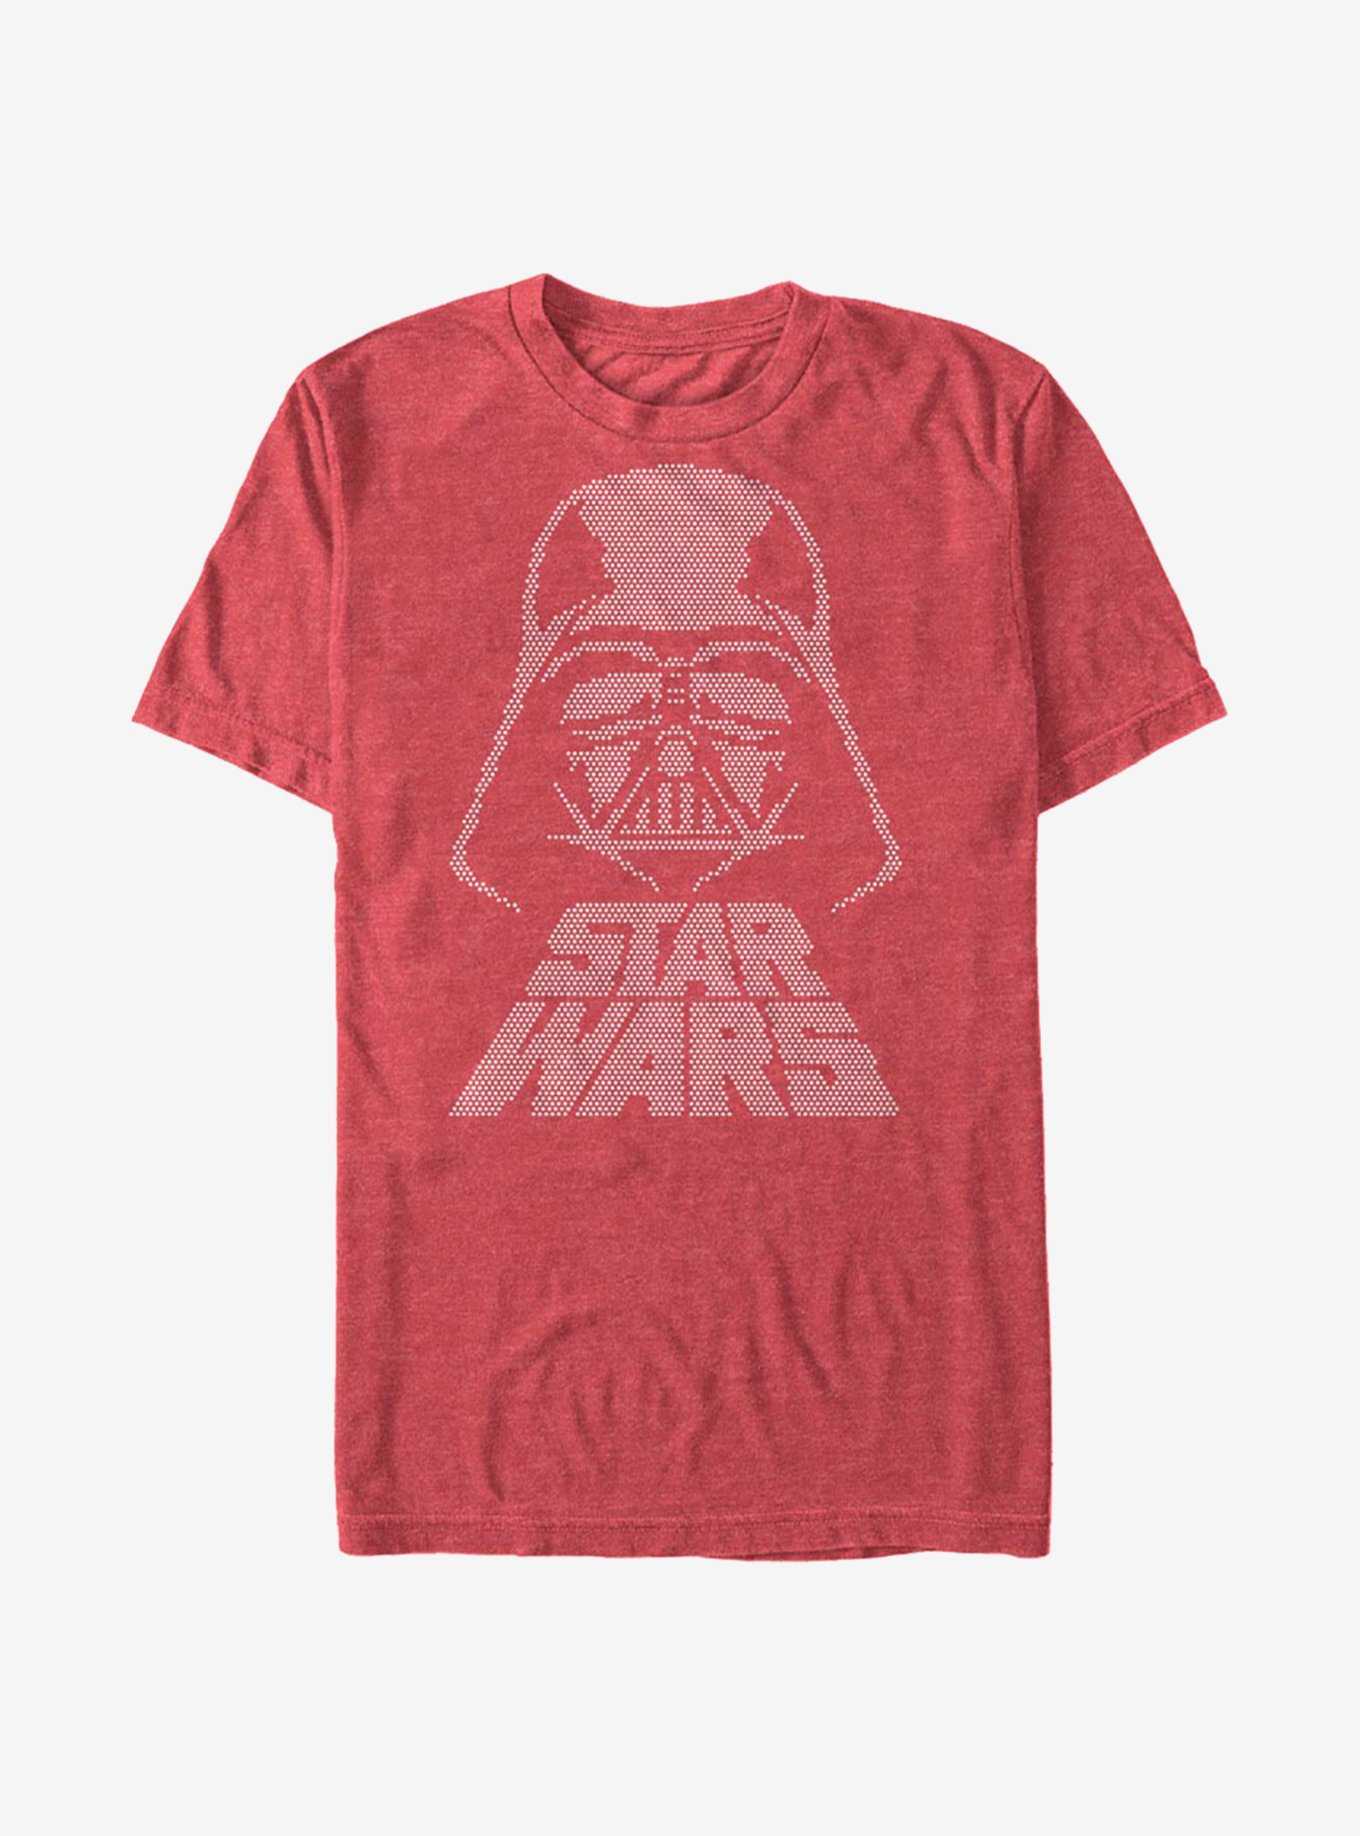 Star Wars Dot Vader T-Shirt, , hi-res